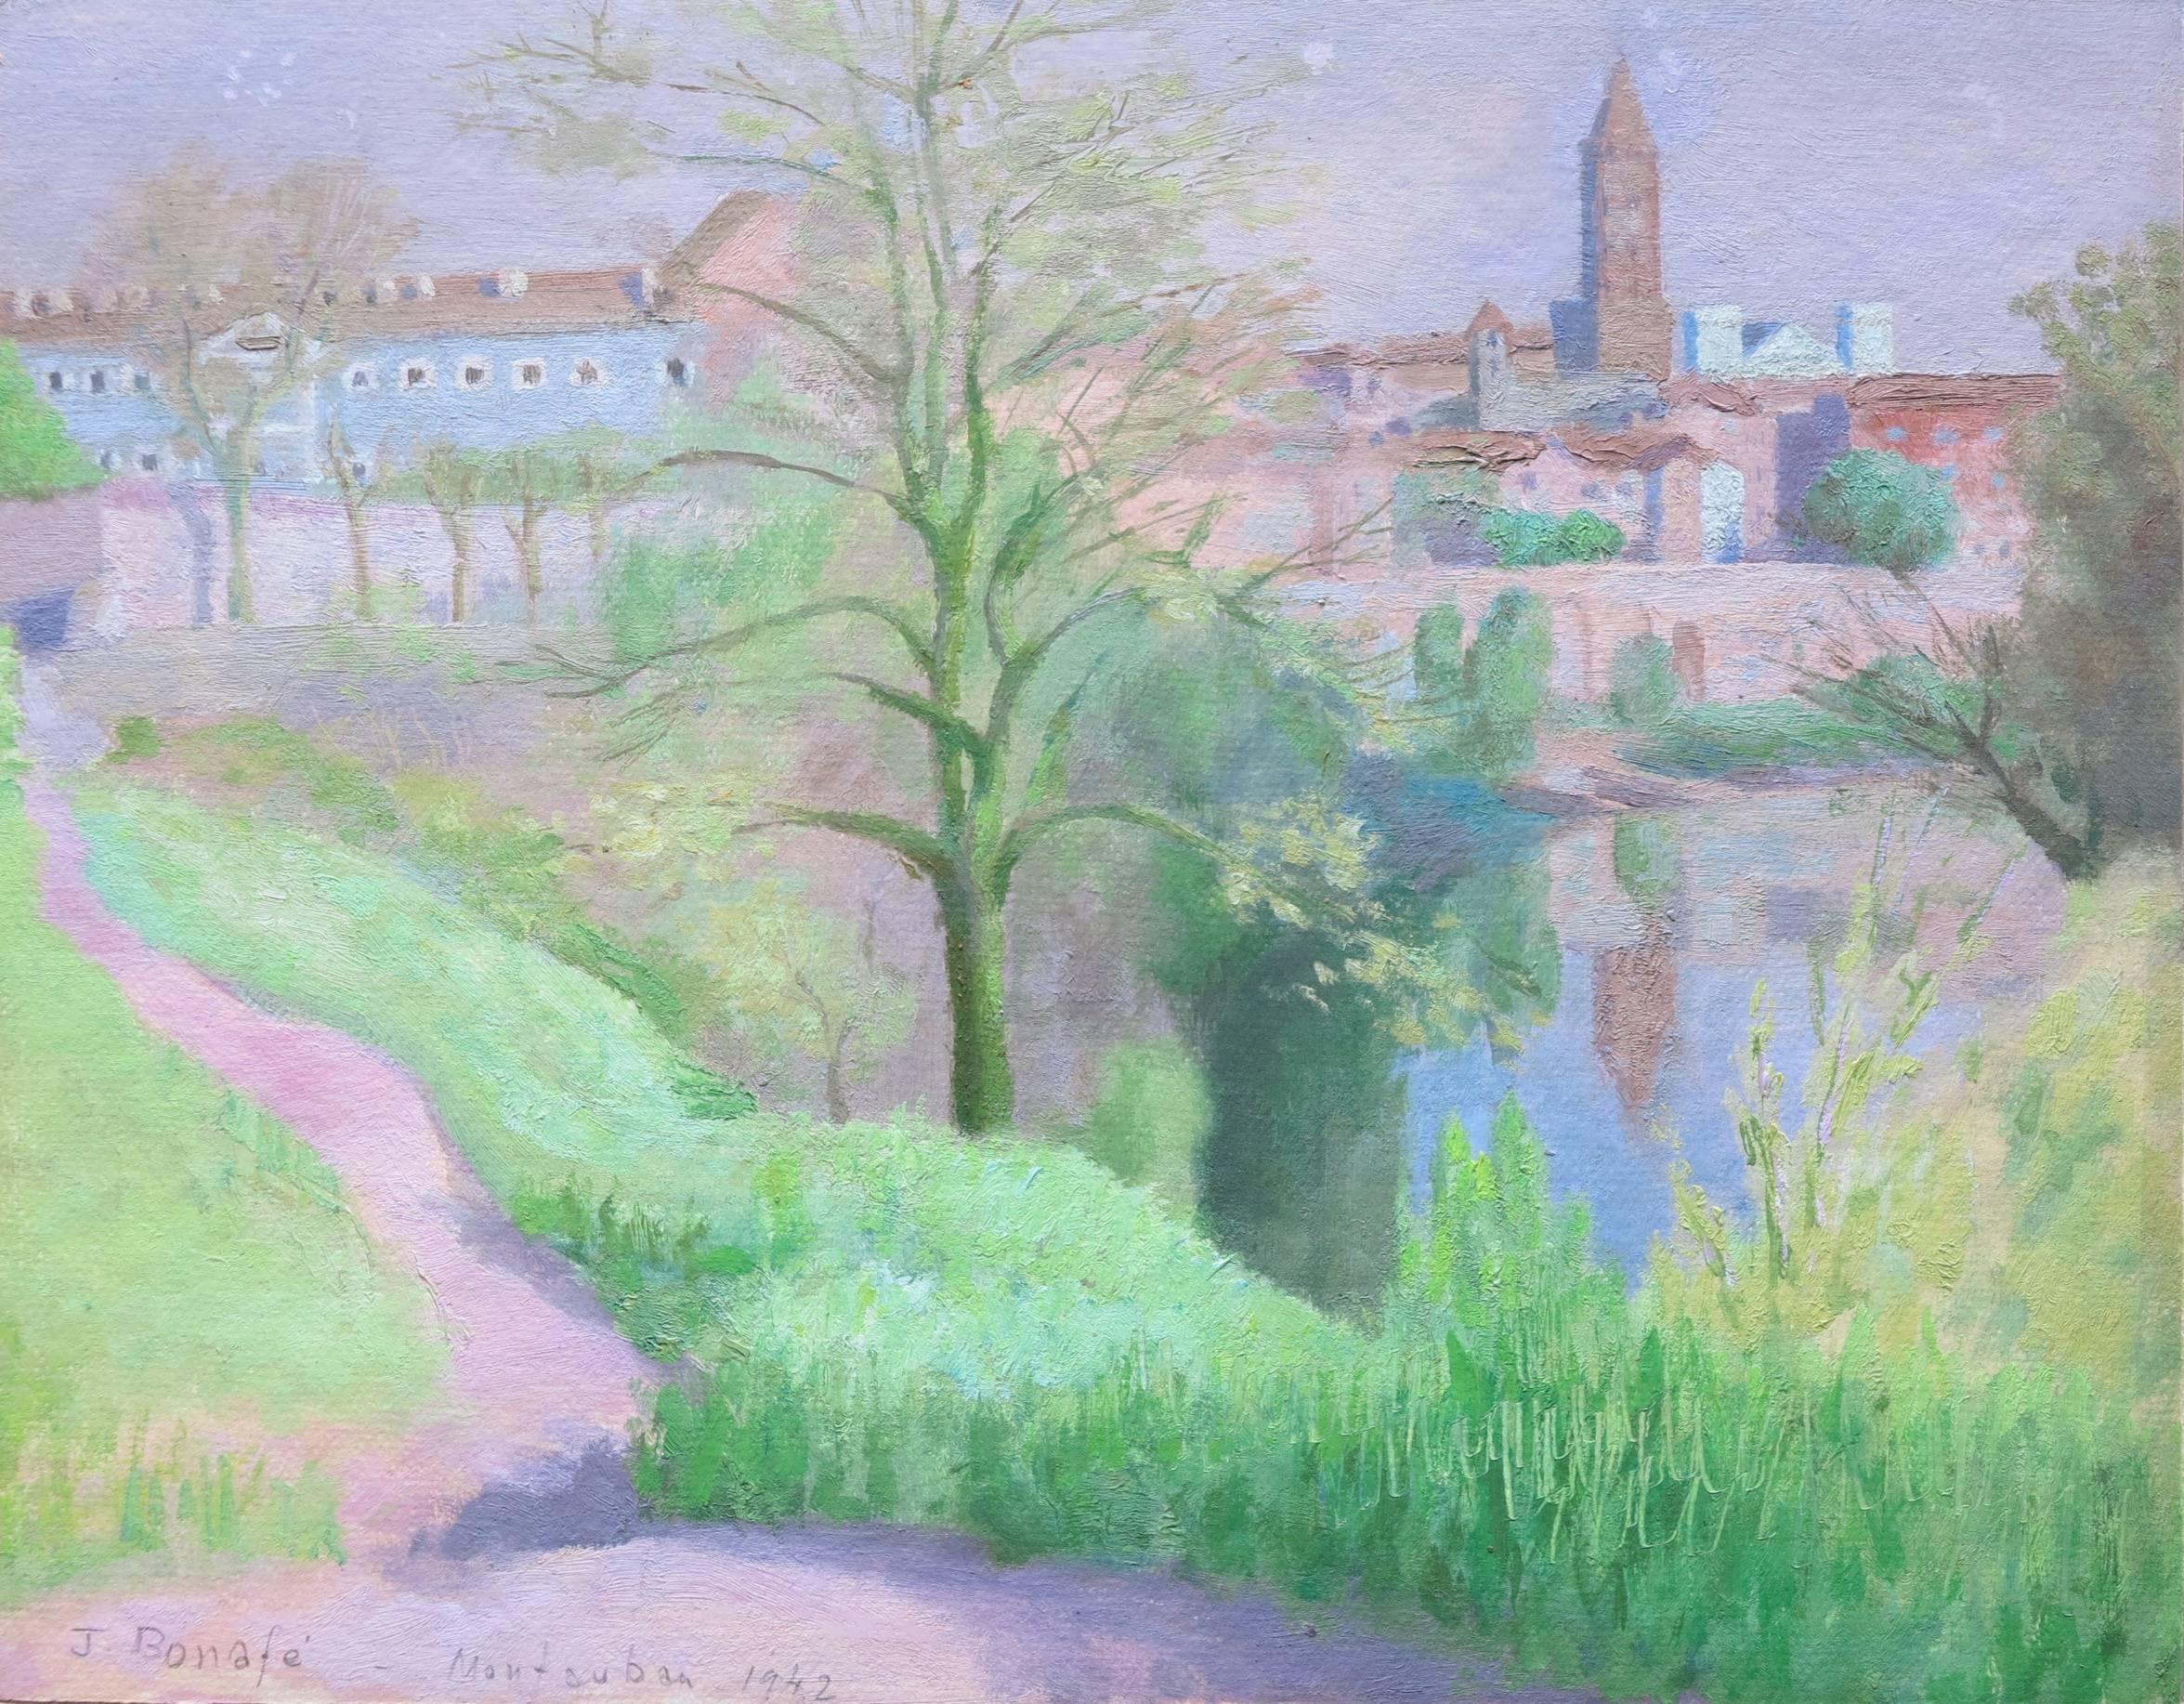 Montauban - Painting by Juan Bonafe